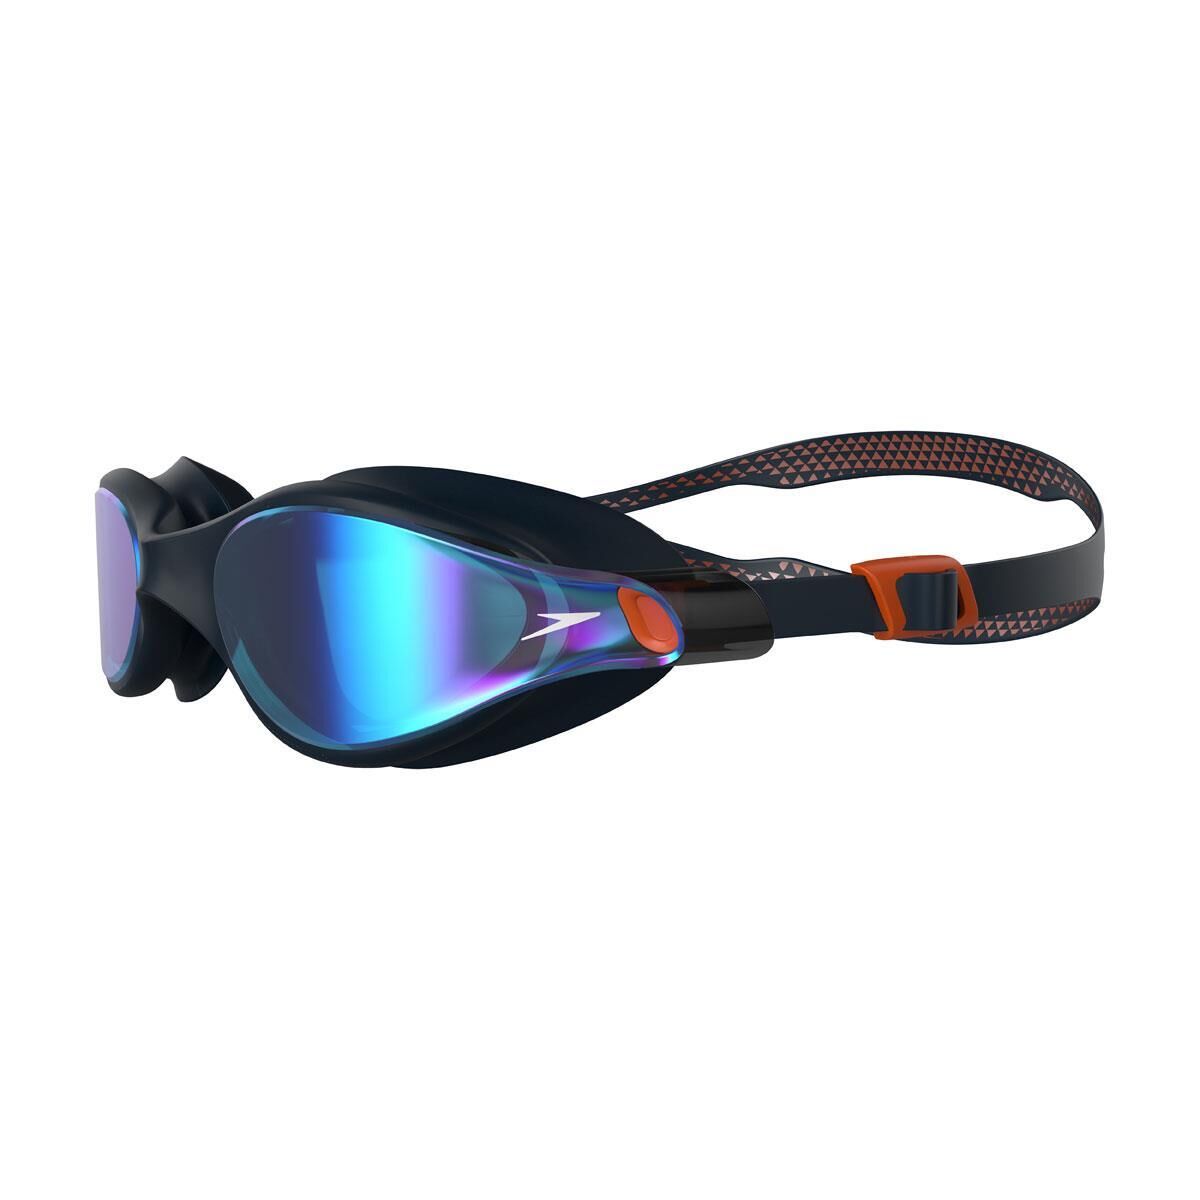 SPEEDO Speedo Vue Mirrored Goggles - True Navy/ Dragonfire Orange/ Sapphire Violet